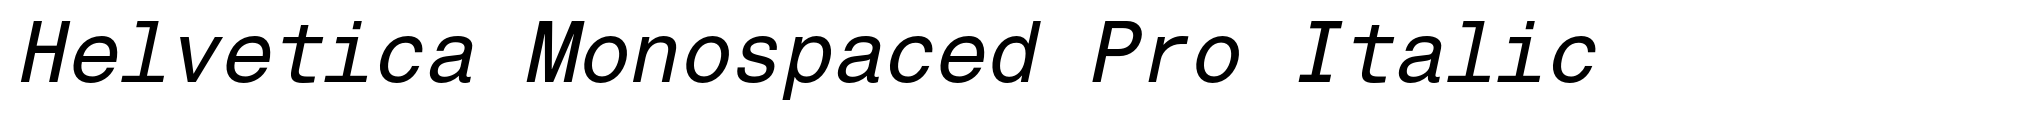 Helvetica Monospaced Pro Italic image